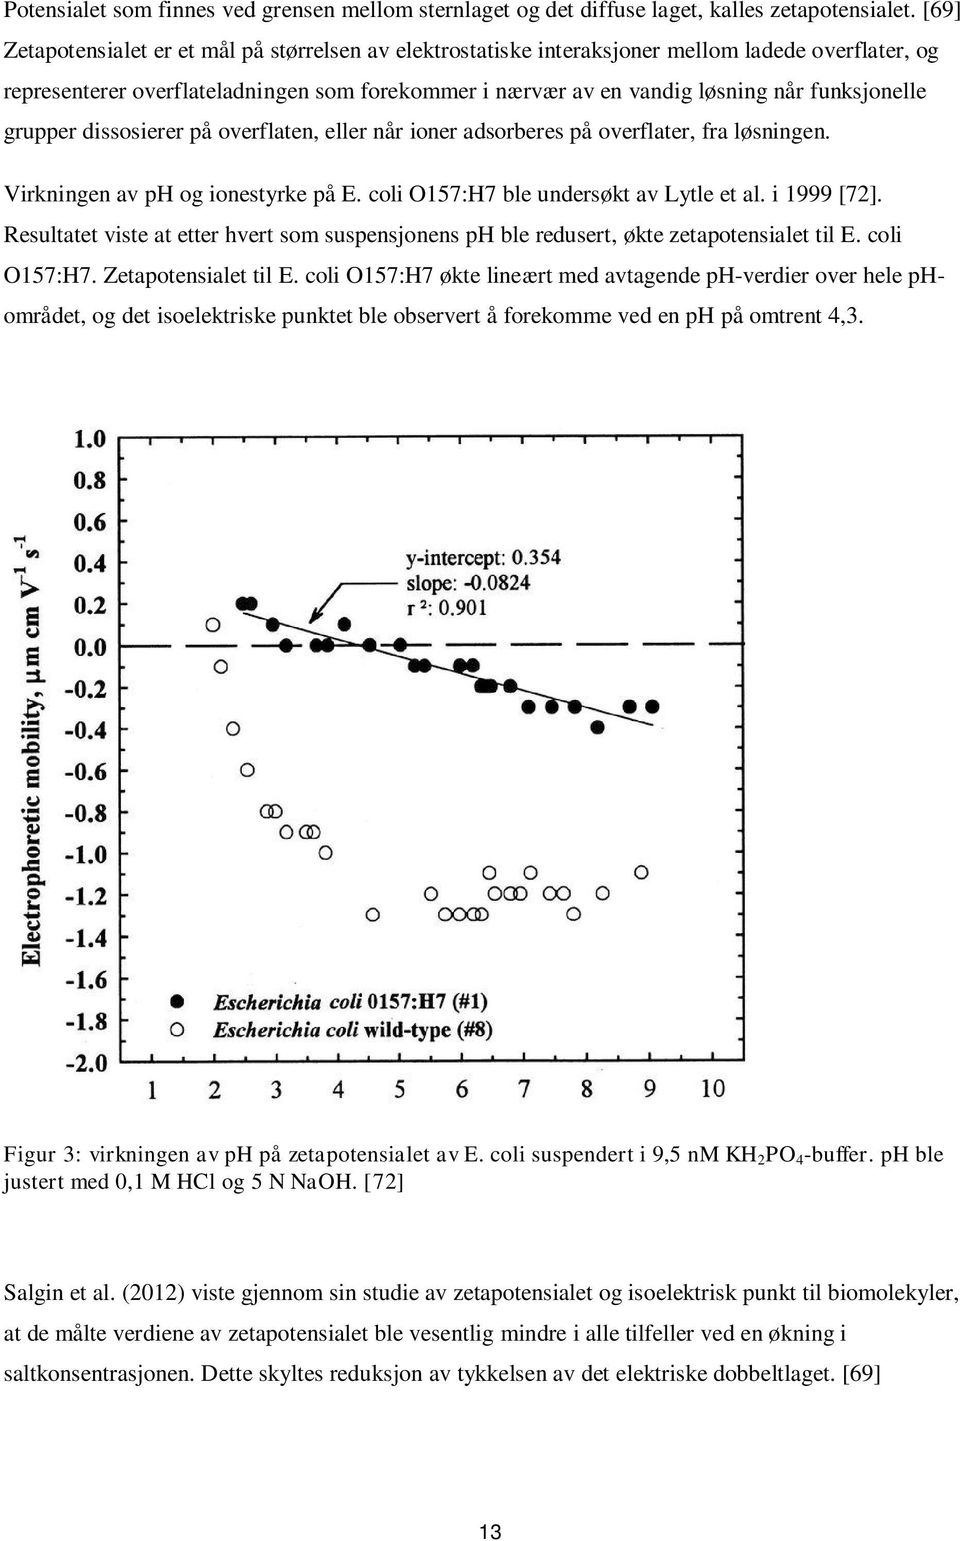 funksjonelle grupper dissosierer på overflaten, eller når ioner adsorberes på overflater, fra løsningen. Virkningen av ph og ionestyrke på E. coli O157:H7 ble undersøkt av Lytle et al. i 1999 [72].